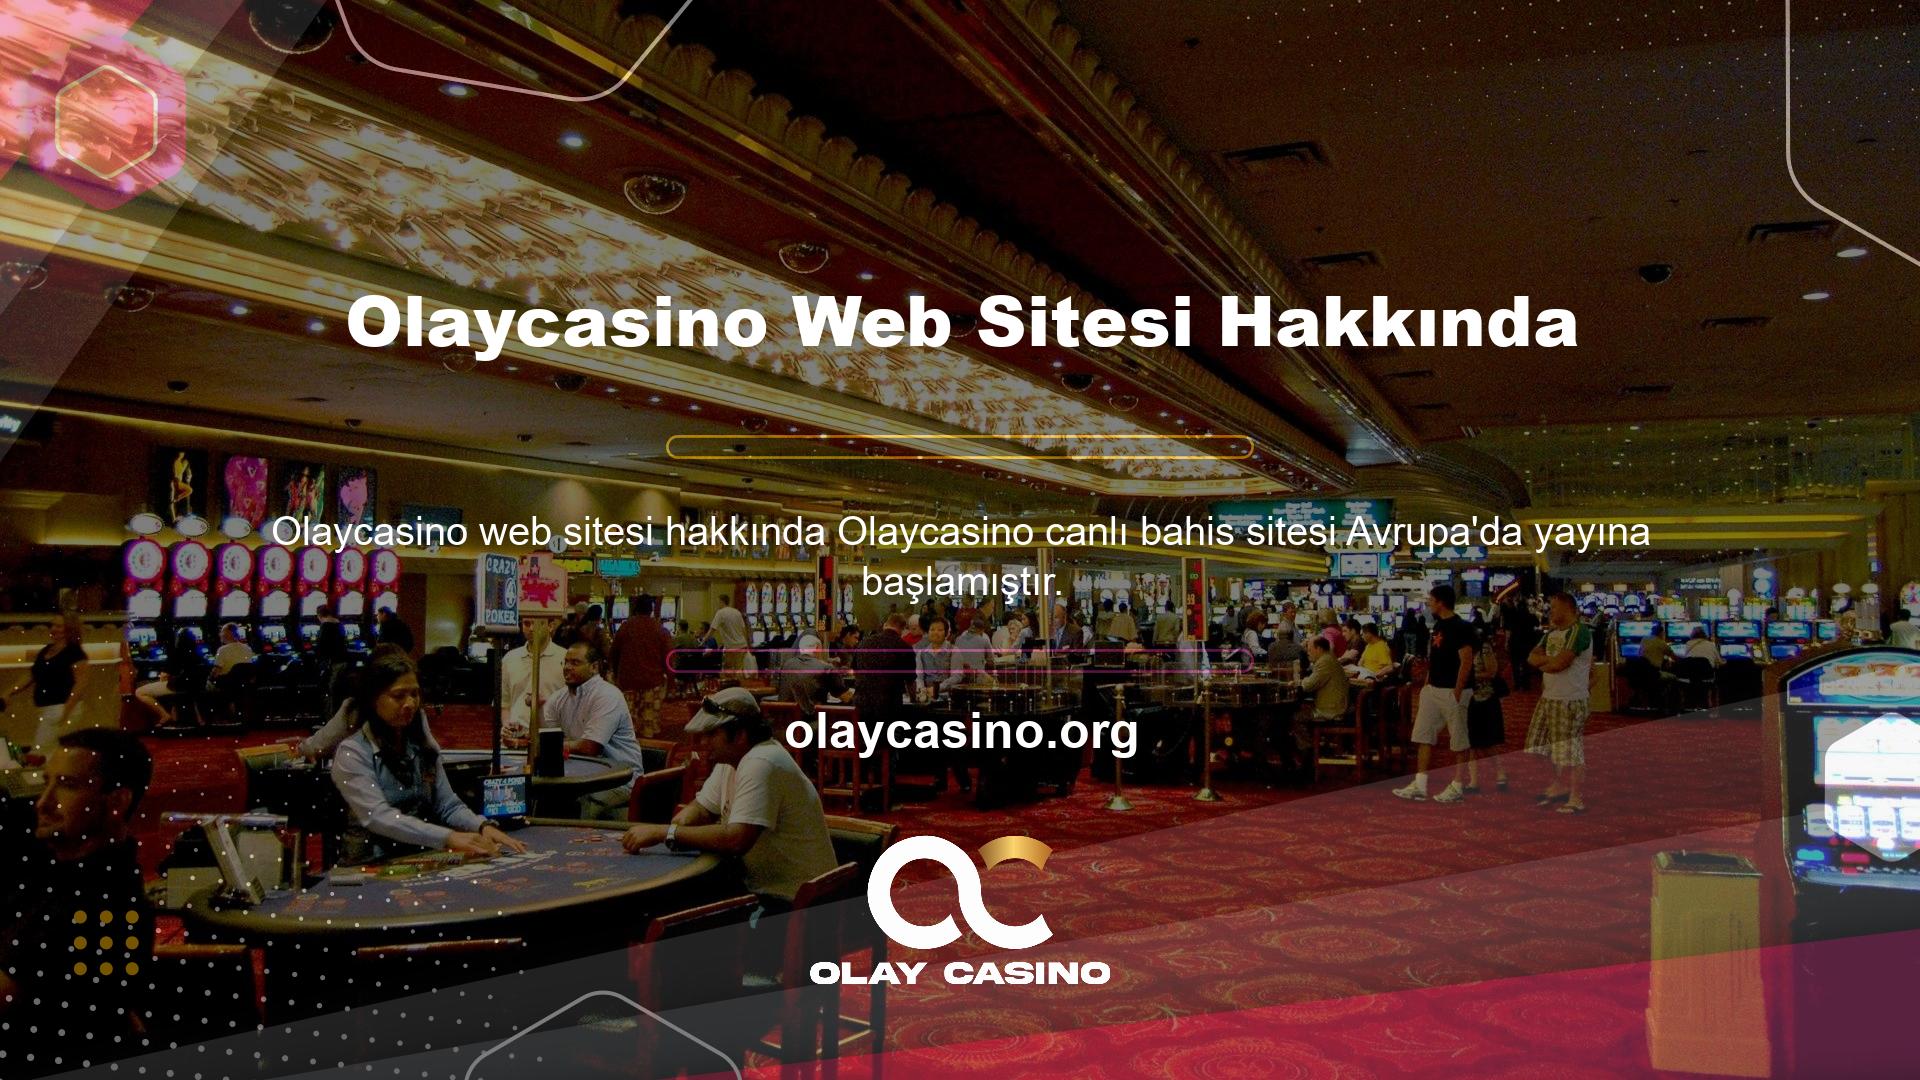 Olaycasino sitesindeki bilgiler doğmuş ve o zamandan beri ülkemiz casino sektöründe bir ses olmuştur